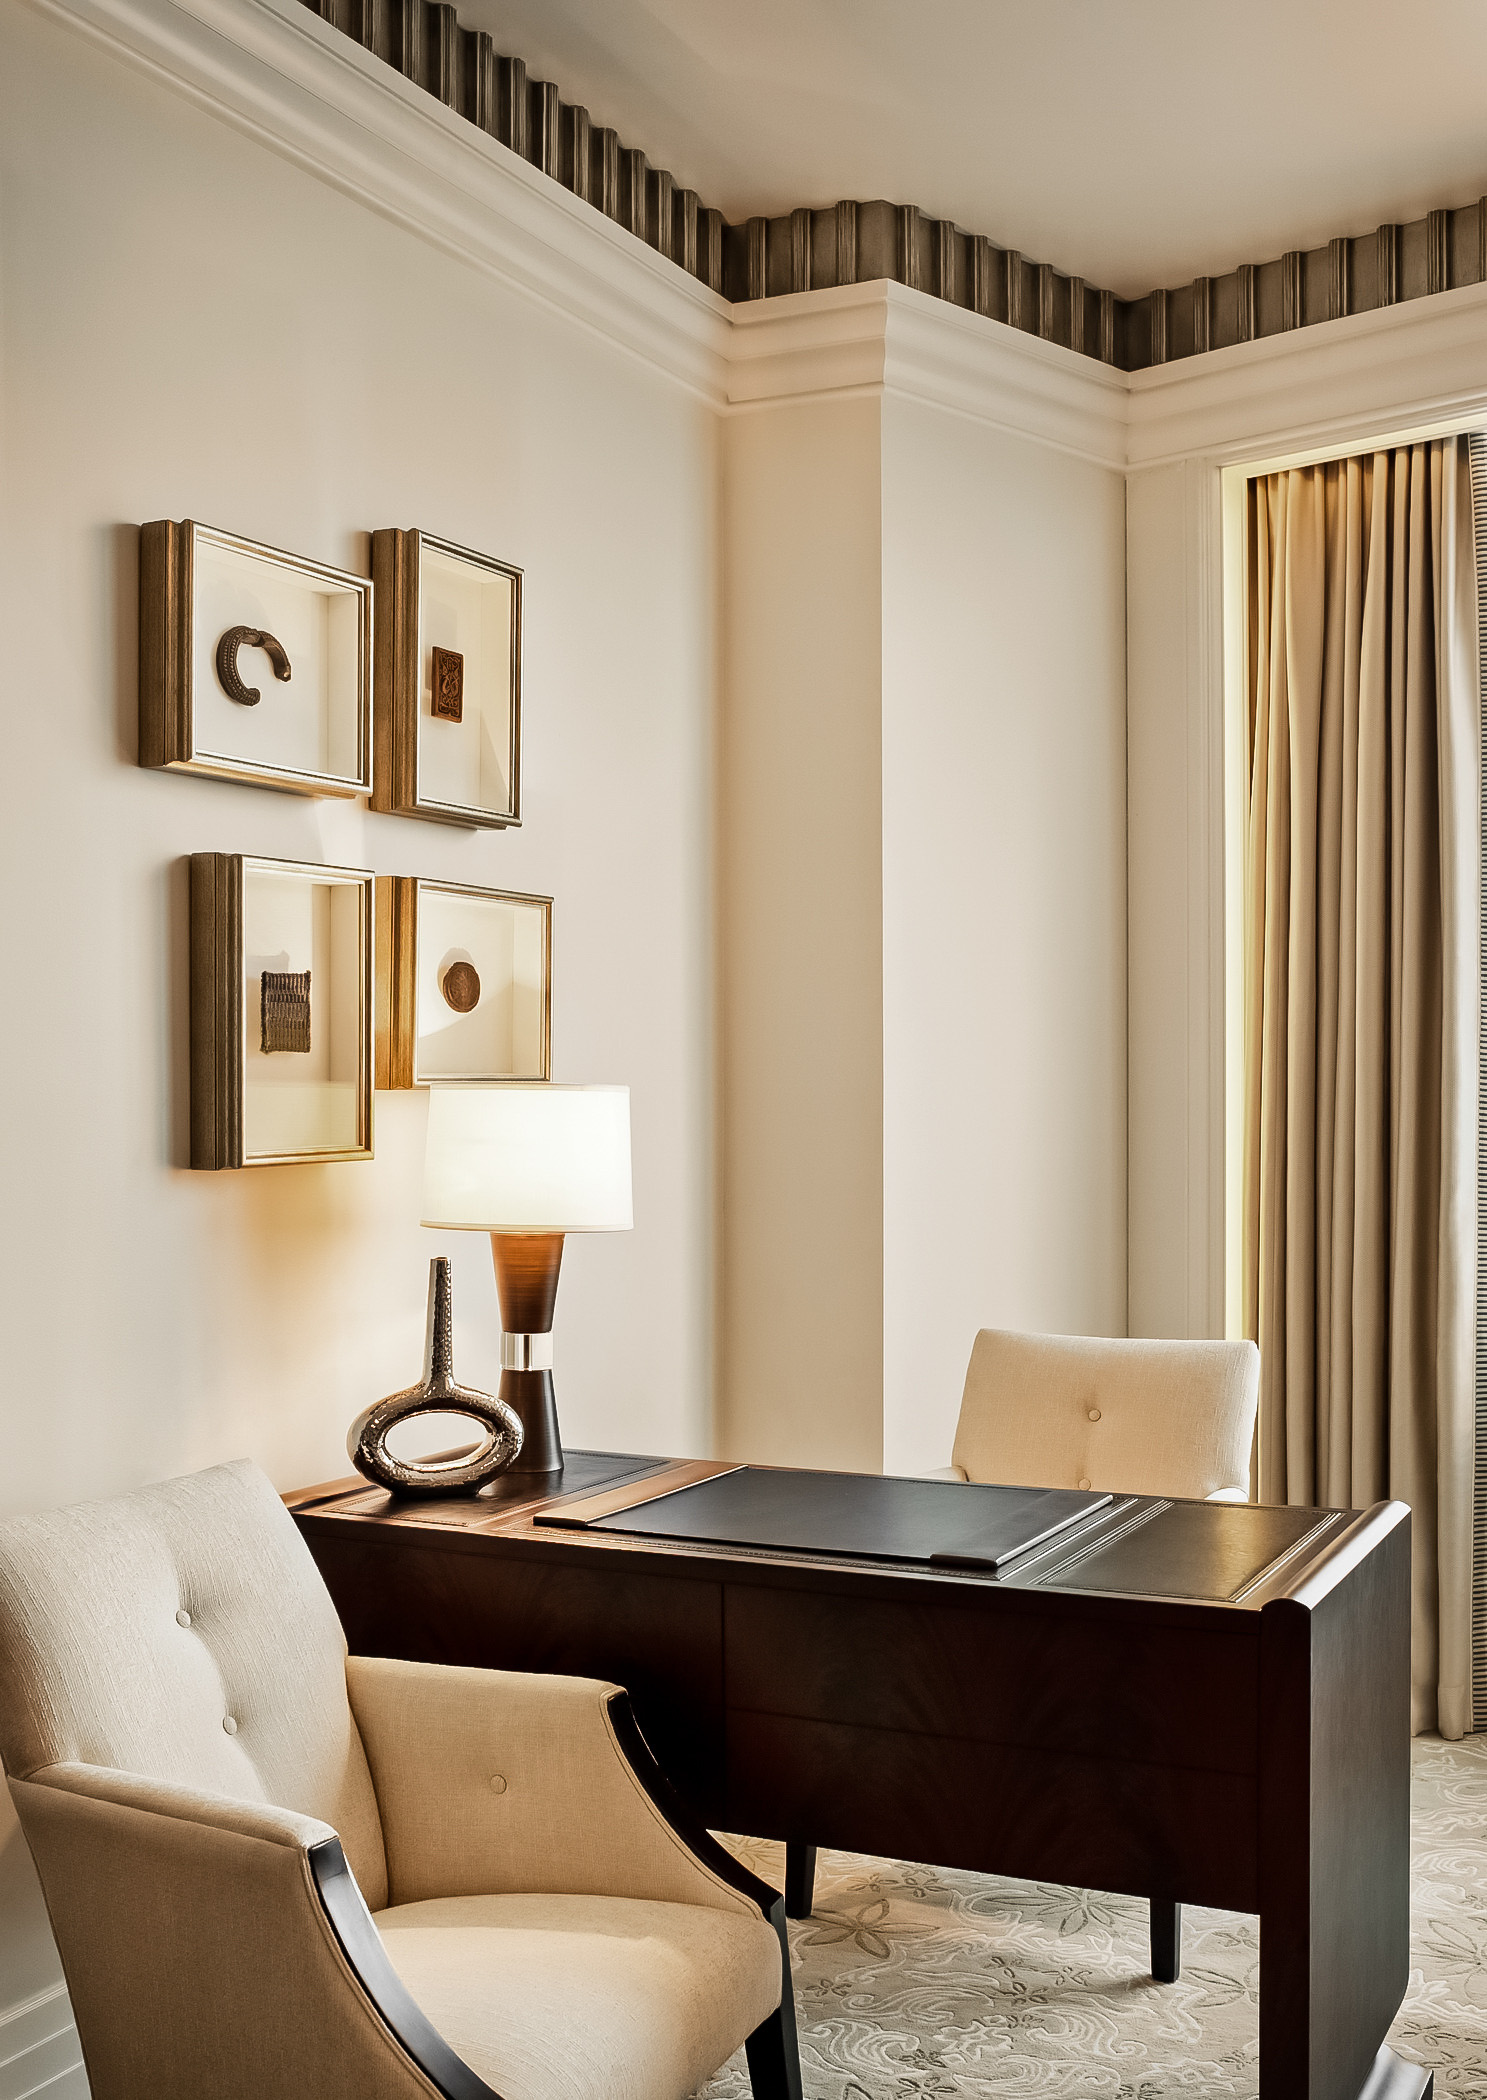 The St. Regis Abu Dhabi Hotel - Abu Dhabi, United Arab Emirates - Guest Room Work Desk